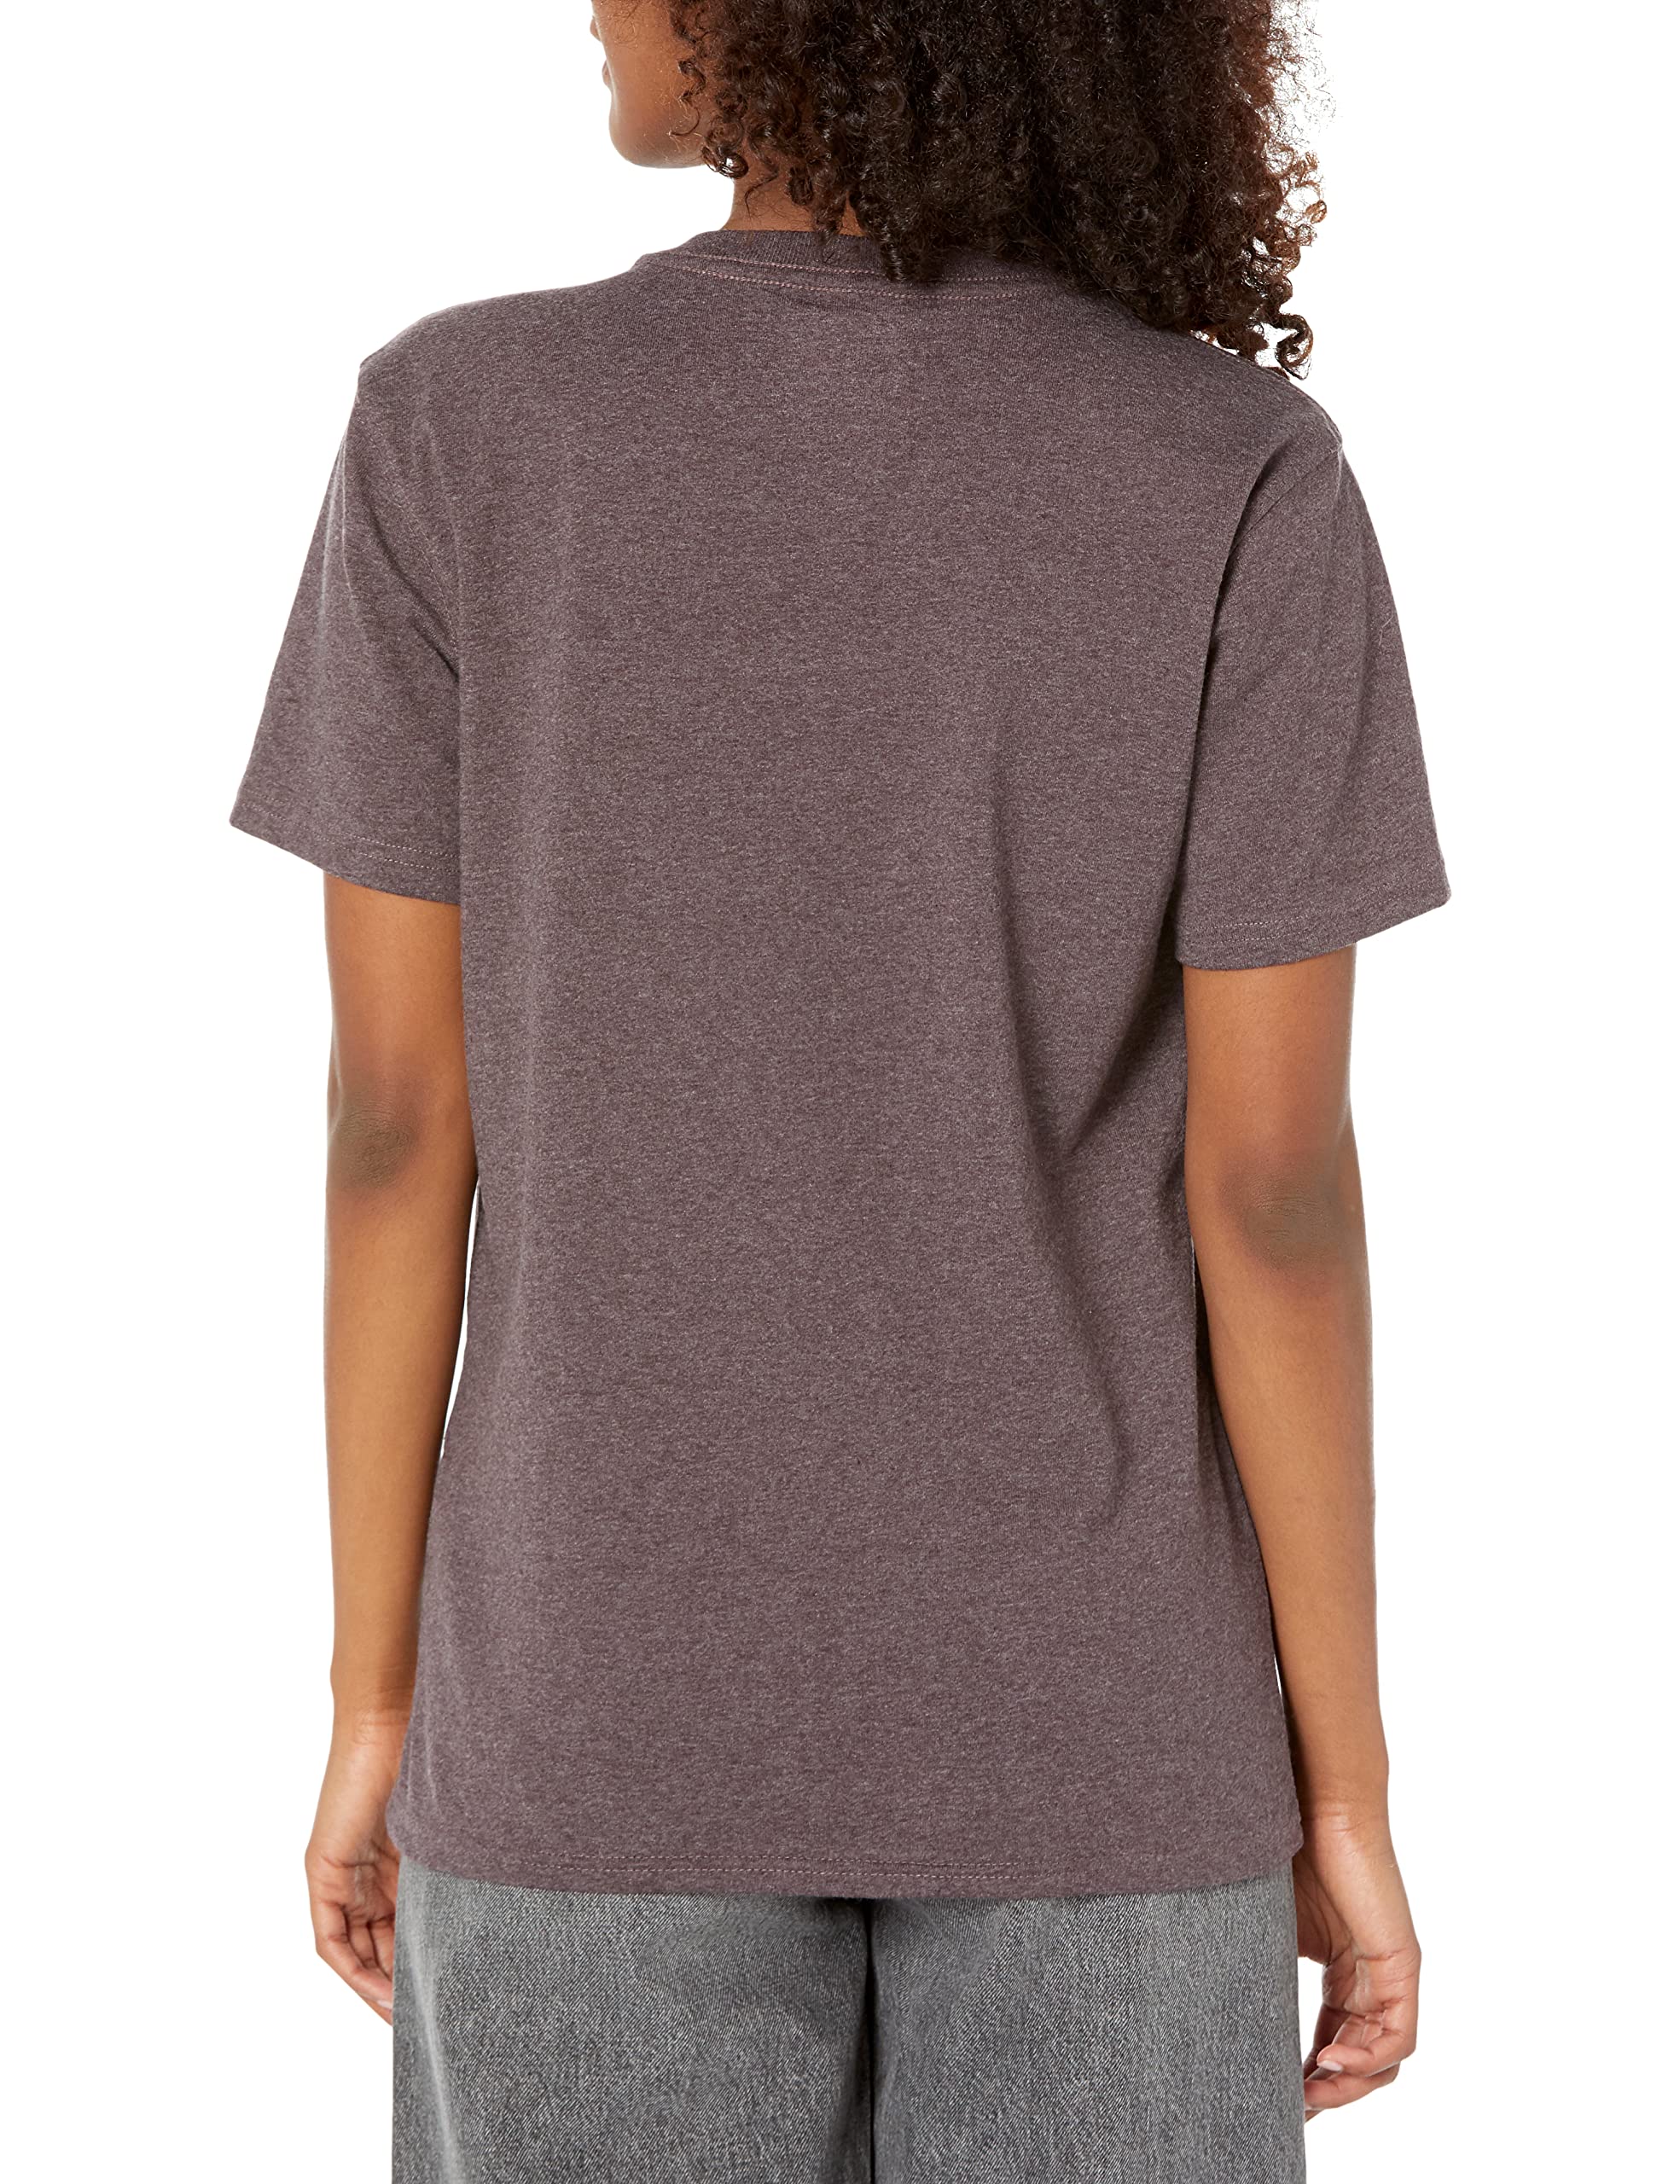 Carhartt Women's Heavyweight Short-Sleeve Pocket T-Shirt